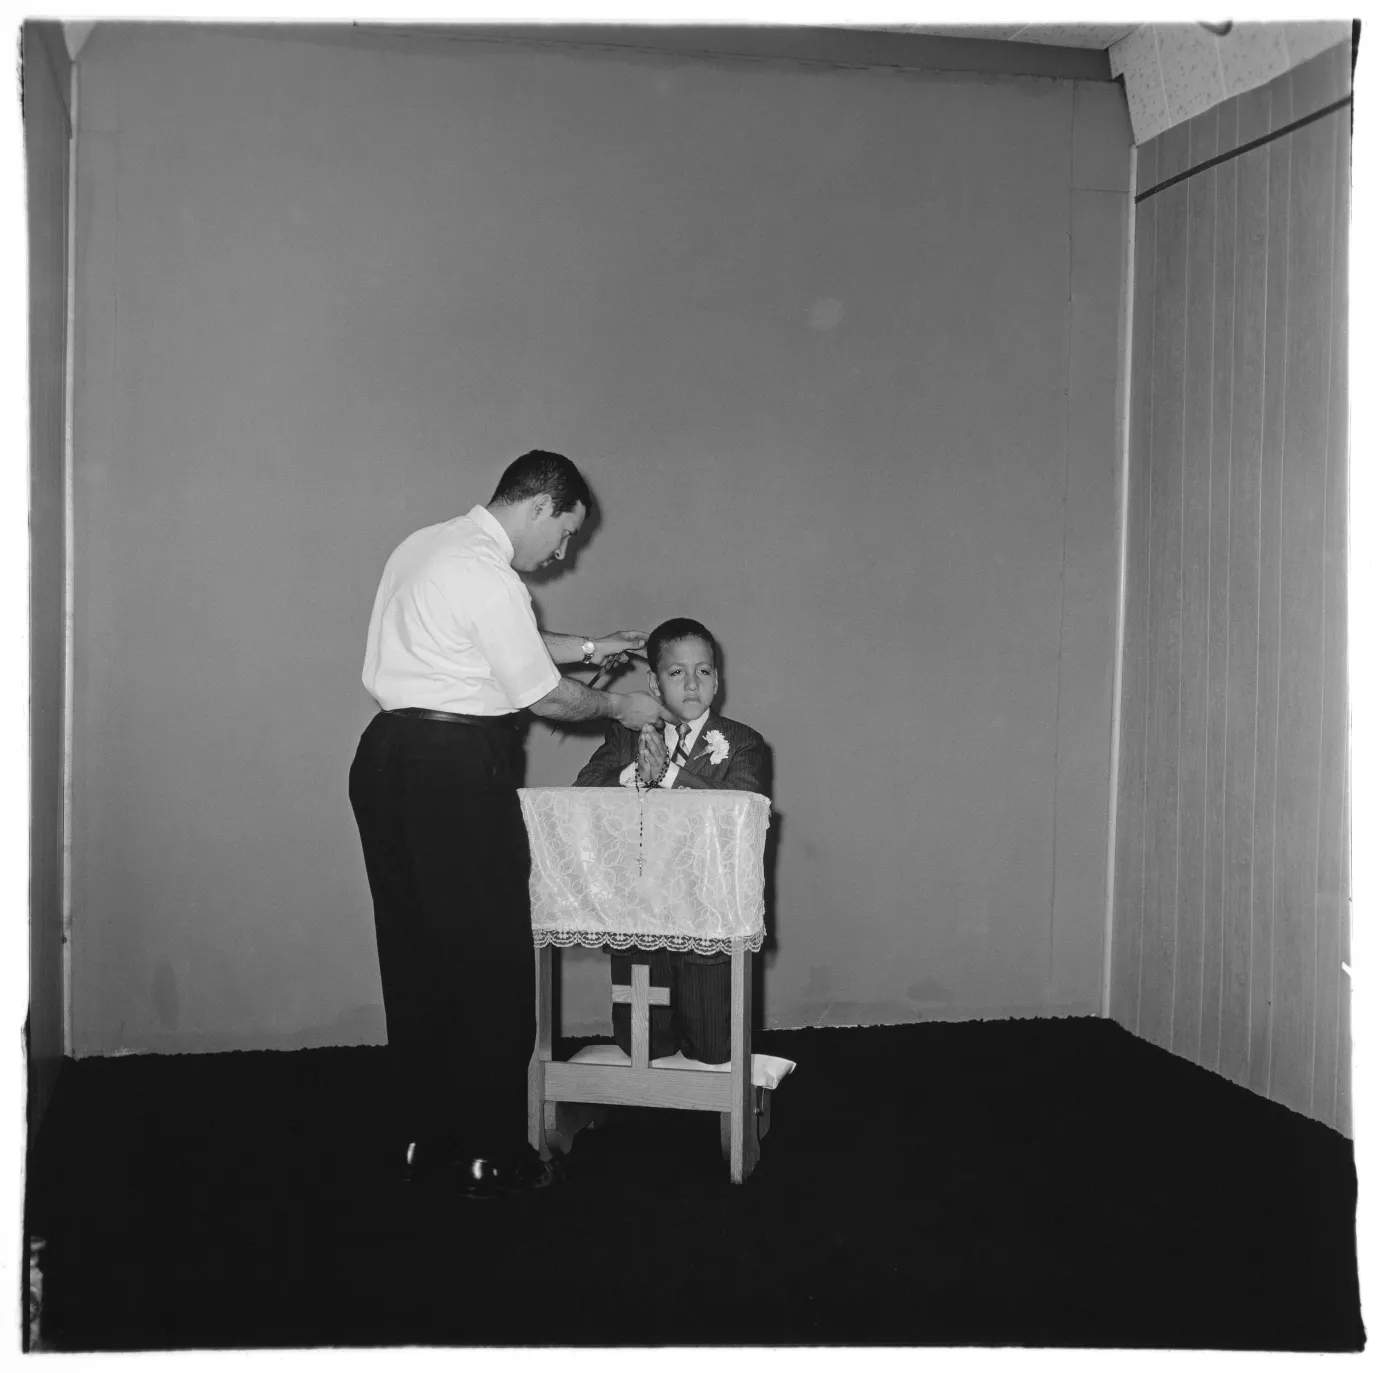  Photographer posing communion boy, N.Y.C. 1968 gelatin silver print, 20 x 16 inches (sheet) [50.8 x 40.6 cm]